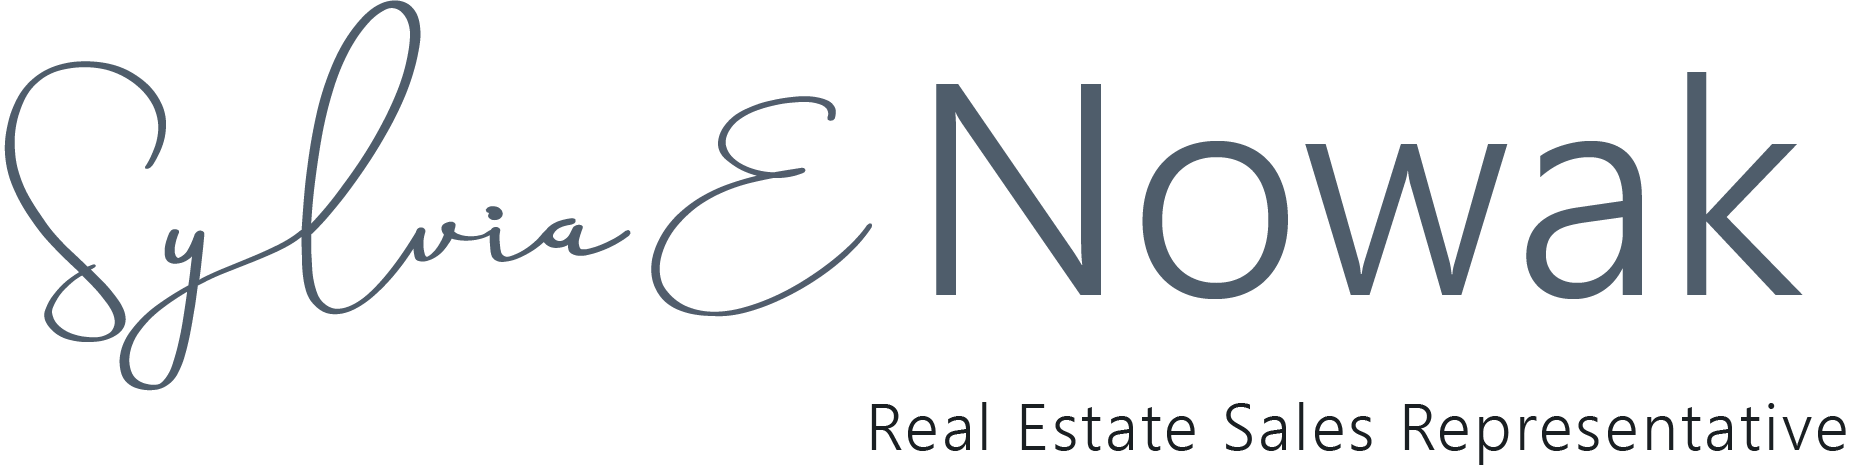 Sylvia E. Nowak, Real Estate Sales Representative